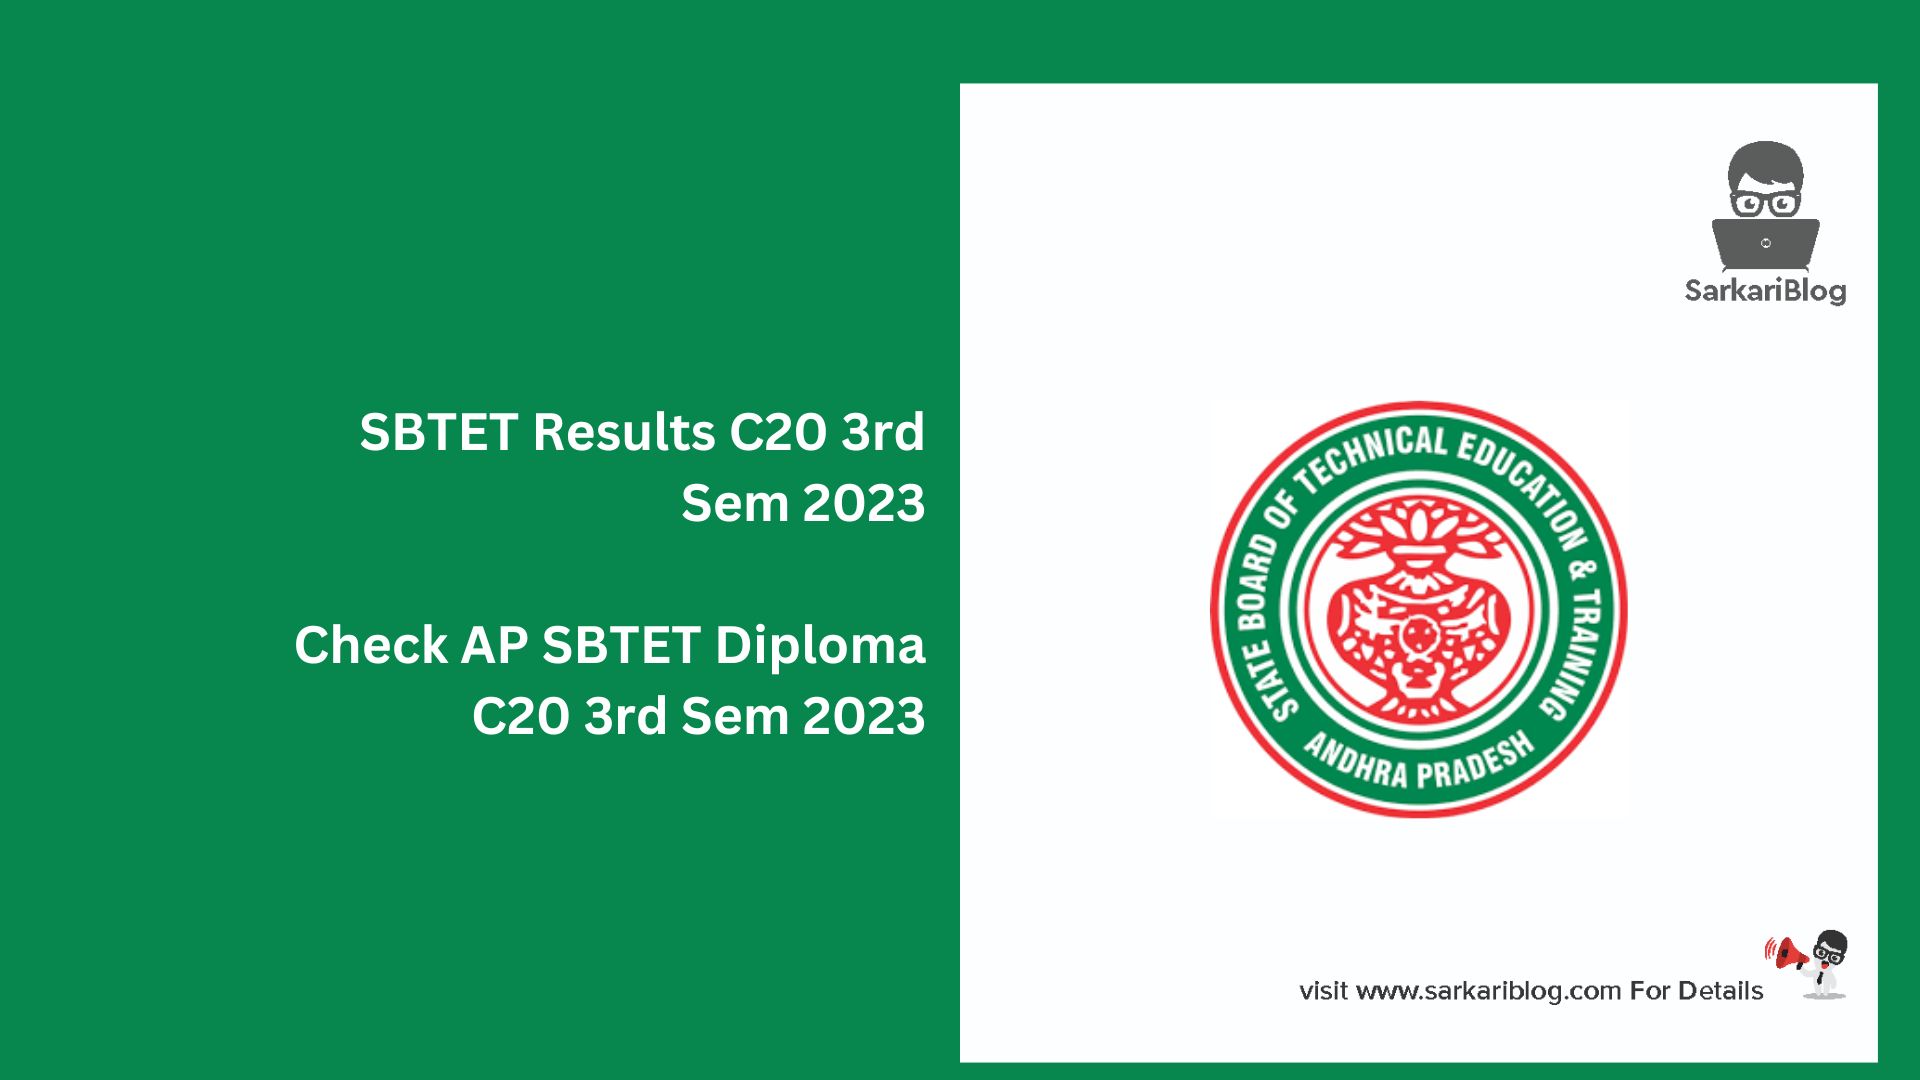 SBTET Results C20 3rd Sem 2023